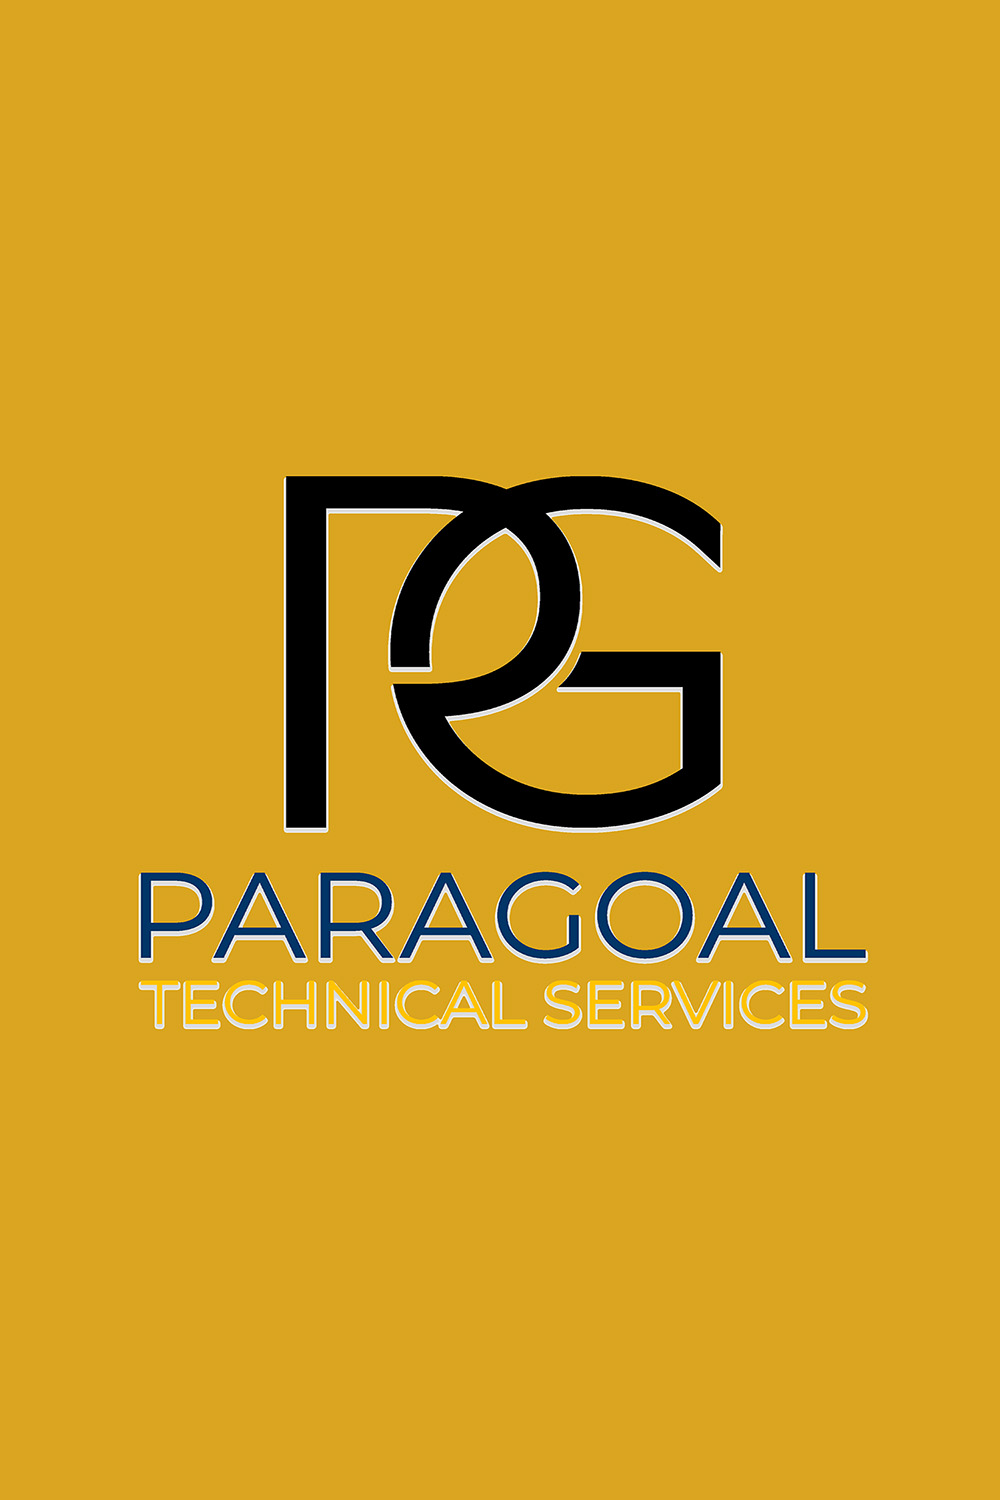 praragoal technical services logo